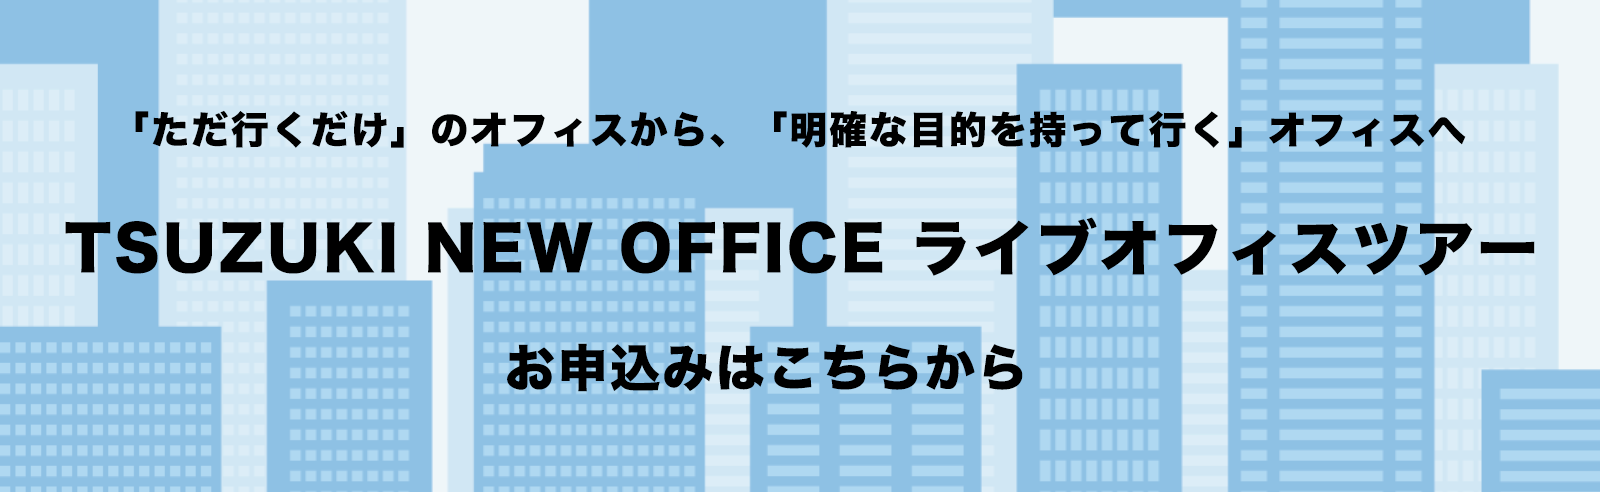 TSUZUKI NEW OFFICE ライブオフィスツアー